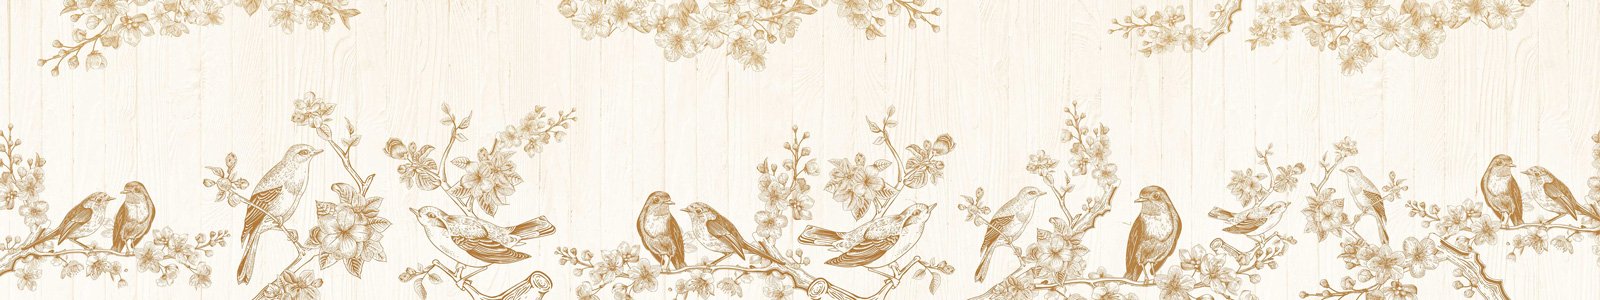 №7057 - Графические рисунки птиц на цветущих ветках яблони